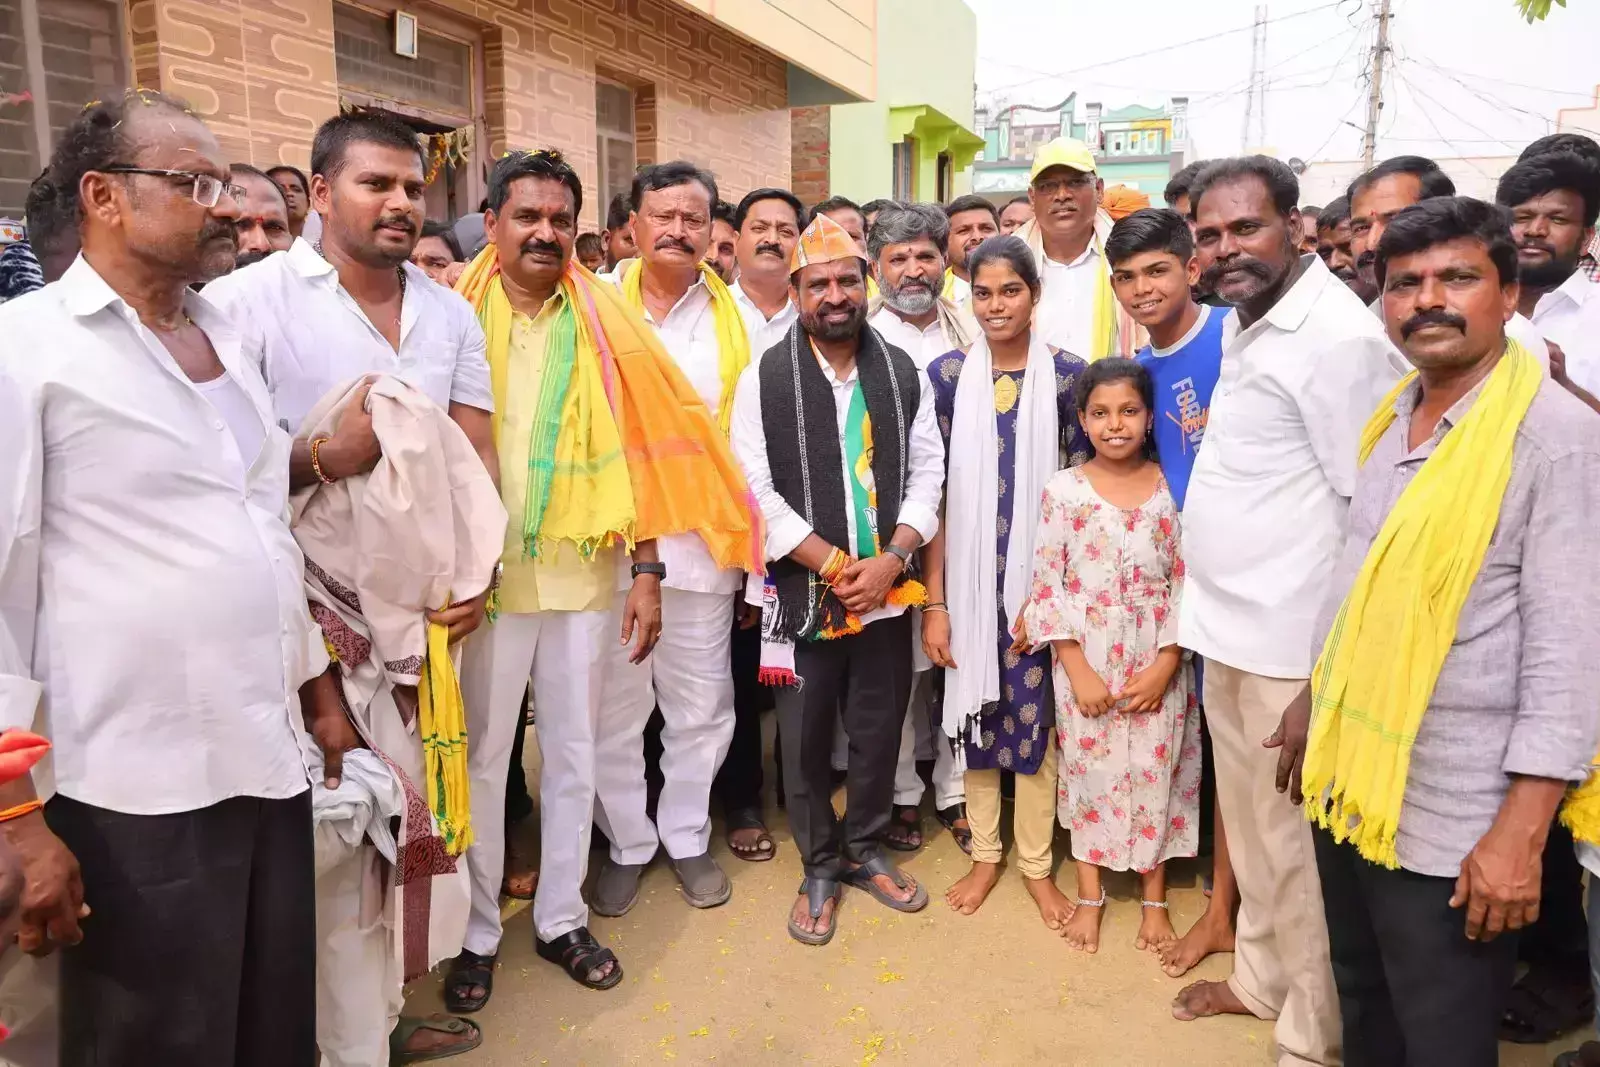 एनडीए उम्मीदवार ने आंध्र प्रदेश में ट्रिपल इंजन सरकार का भरोसा जताया